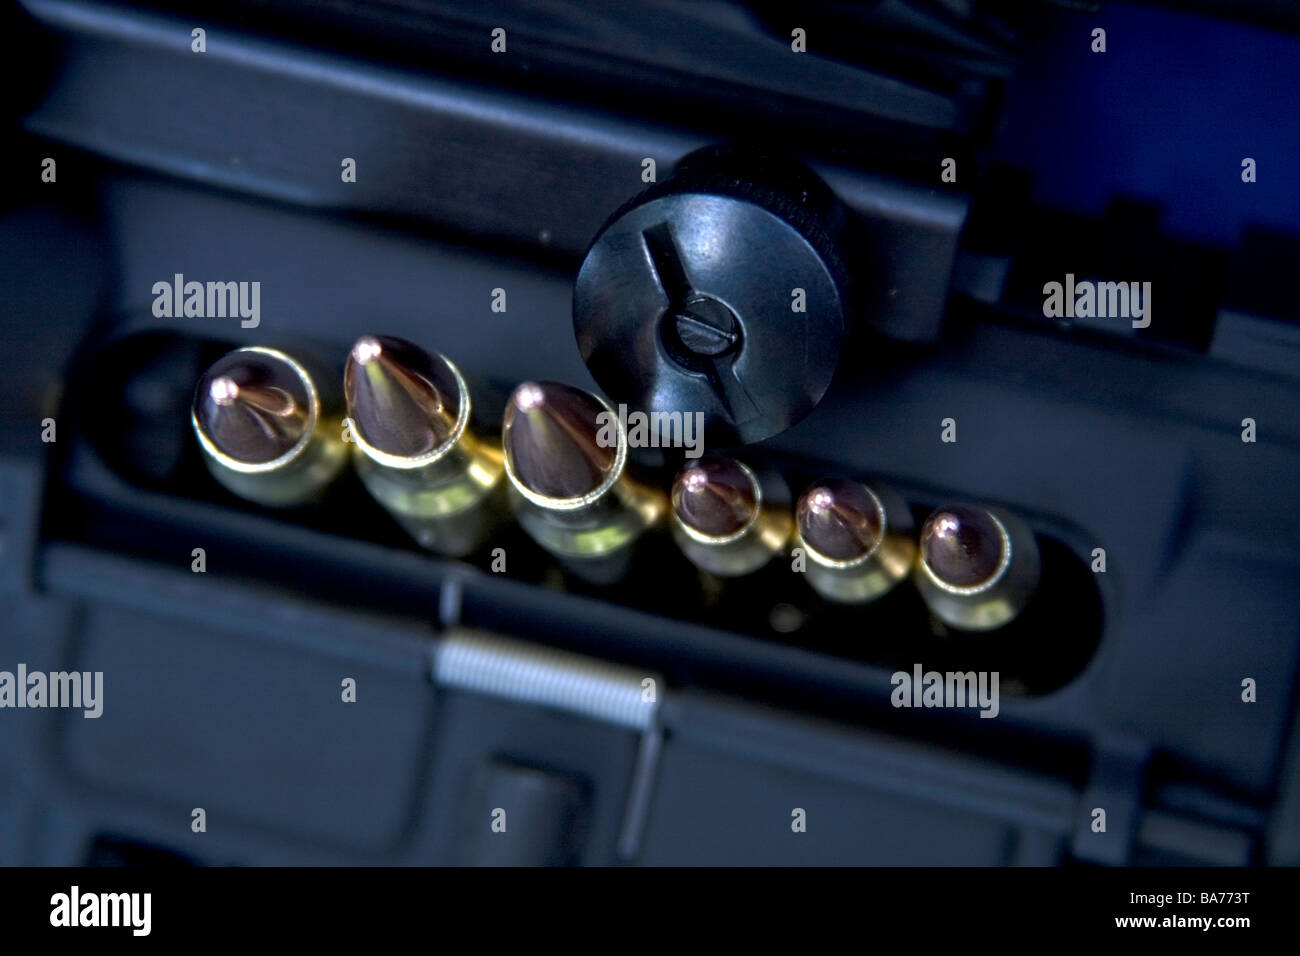 Verschiedene Kugeln sind in der Kammer eines automatischen Gewehr bereit.  Werden sie für Krieg oder Schutz werden verwendet? 2. Änderung Stockfoto